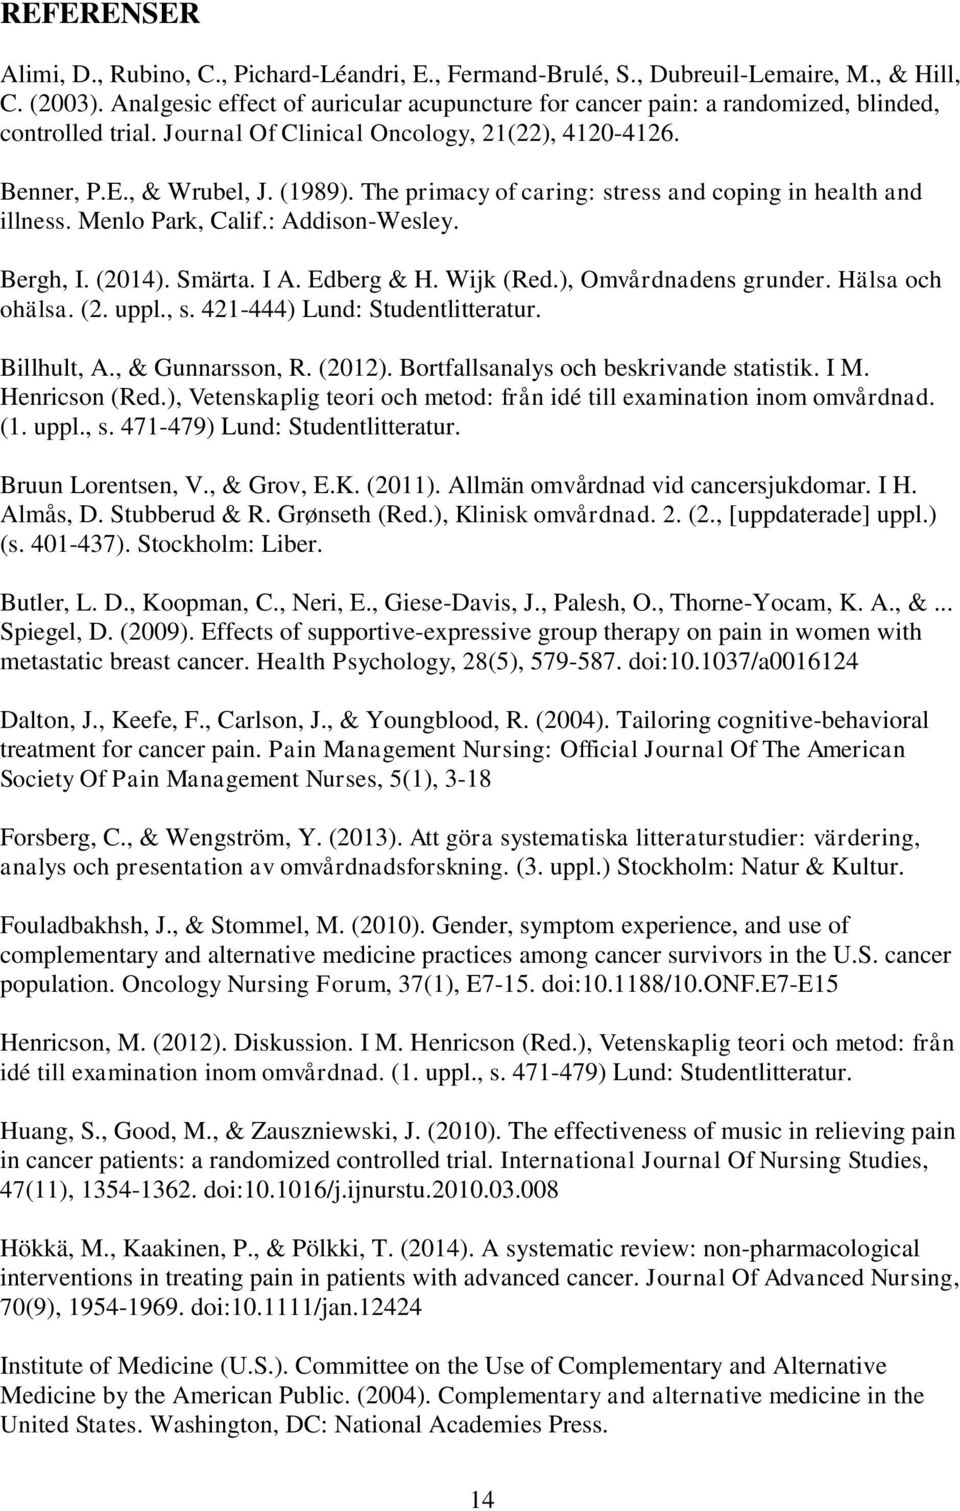 The primacy of caring: stress and coping in health and illness. Menlo Park, Calif.: Addison-Wesley. Bergh, I. (2014). Smärta. I A. Edberg & H. Wijk (Red.), Omvårdnadens grunder. Hälsa och ohälsa. (2. uppl.